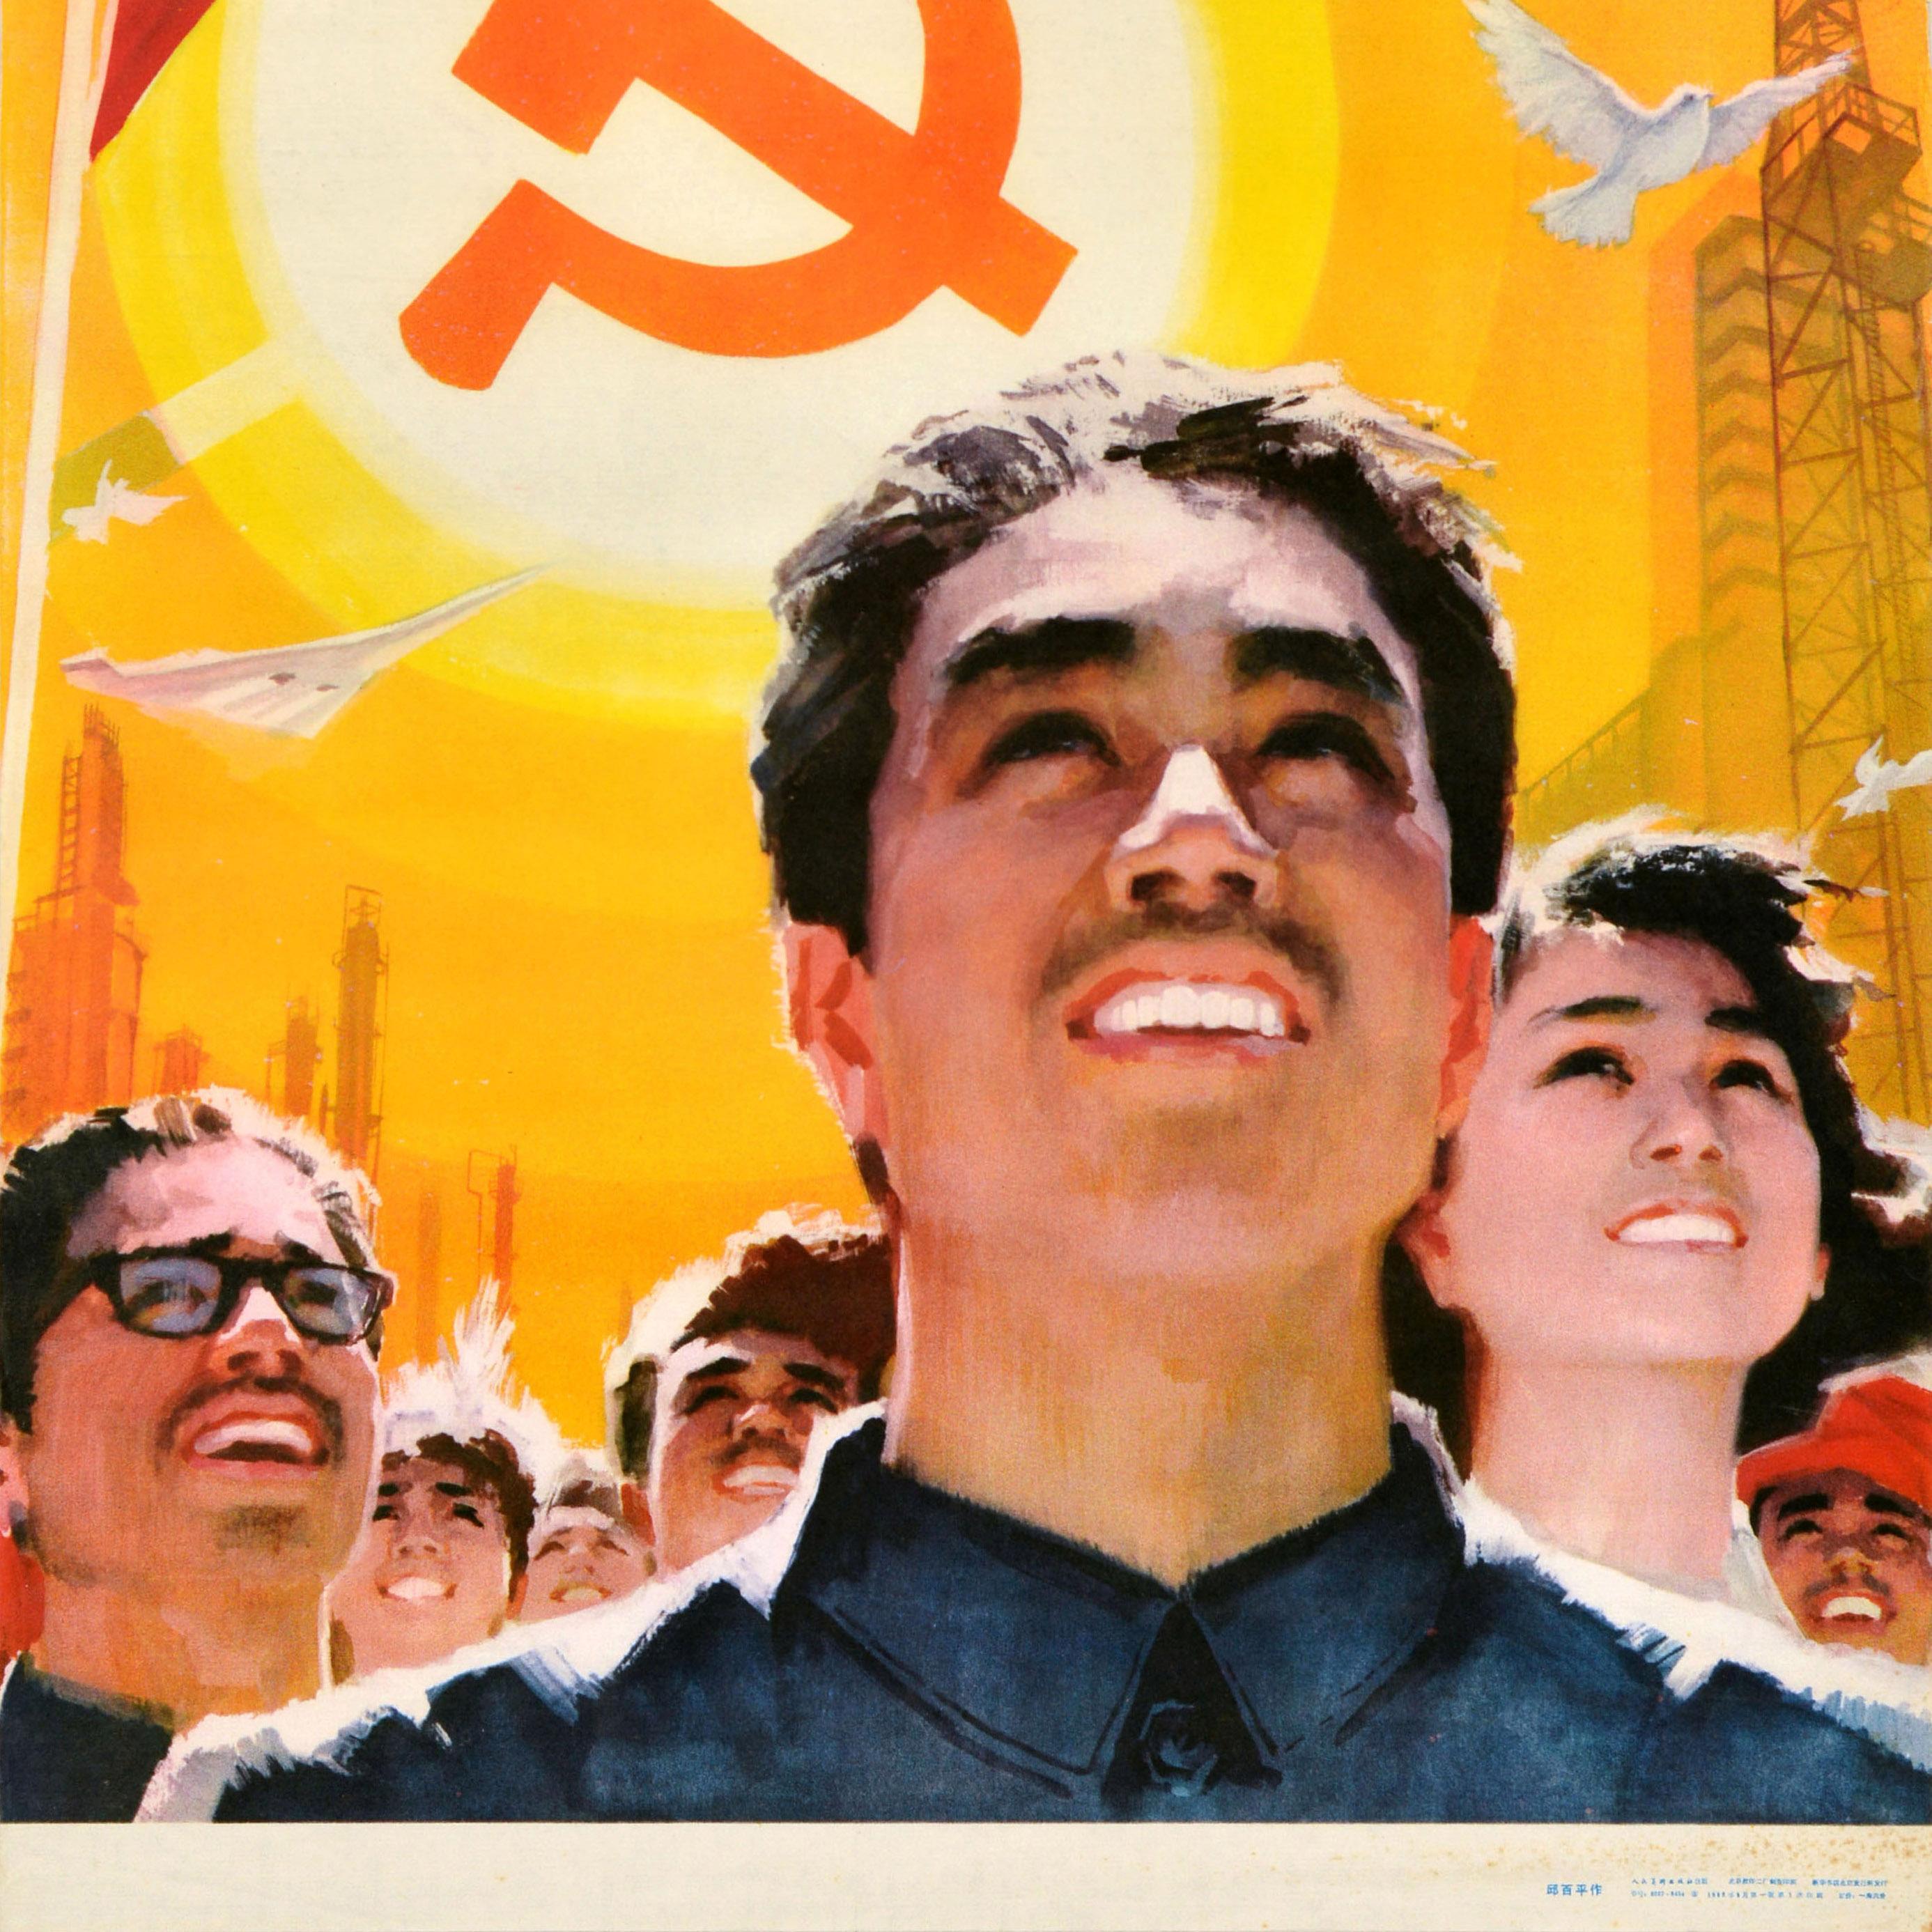 Originales Propagandaplakat der Kommunistischen Partei Chinas - Vintage Unsere Flagge ist der Kommunismus Feiern Sie die Einberufung des 12. Nationalkongresses der Kommunistischen Partei Chinas / 我们的旗帜是共产主义。庆祝中国共产党第十二次全国代表大会召开 - mit einer